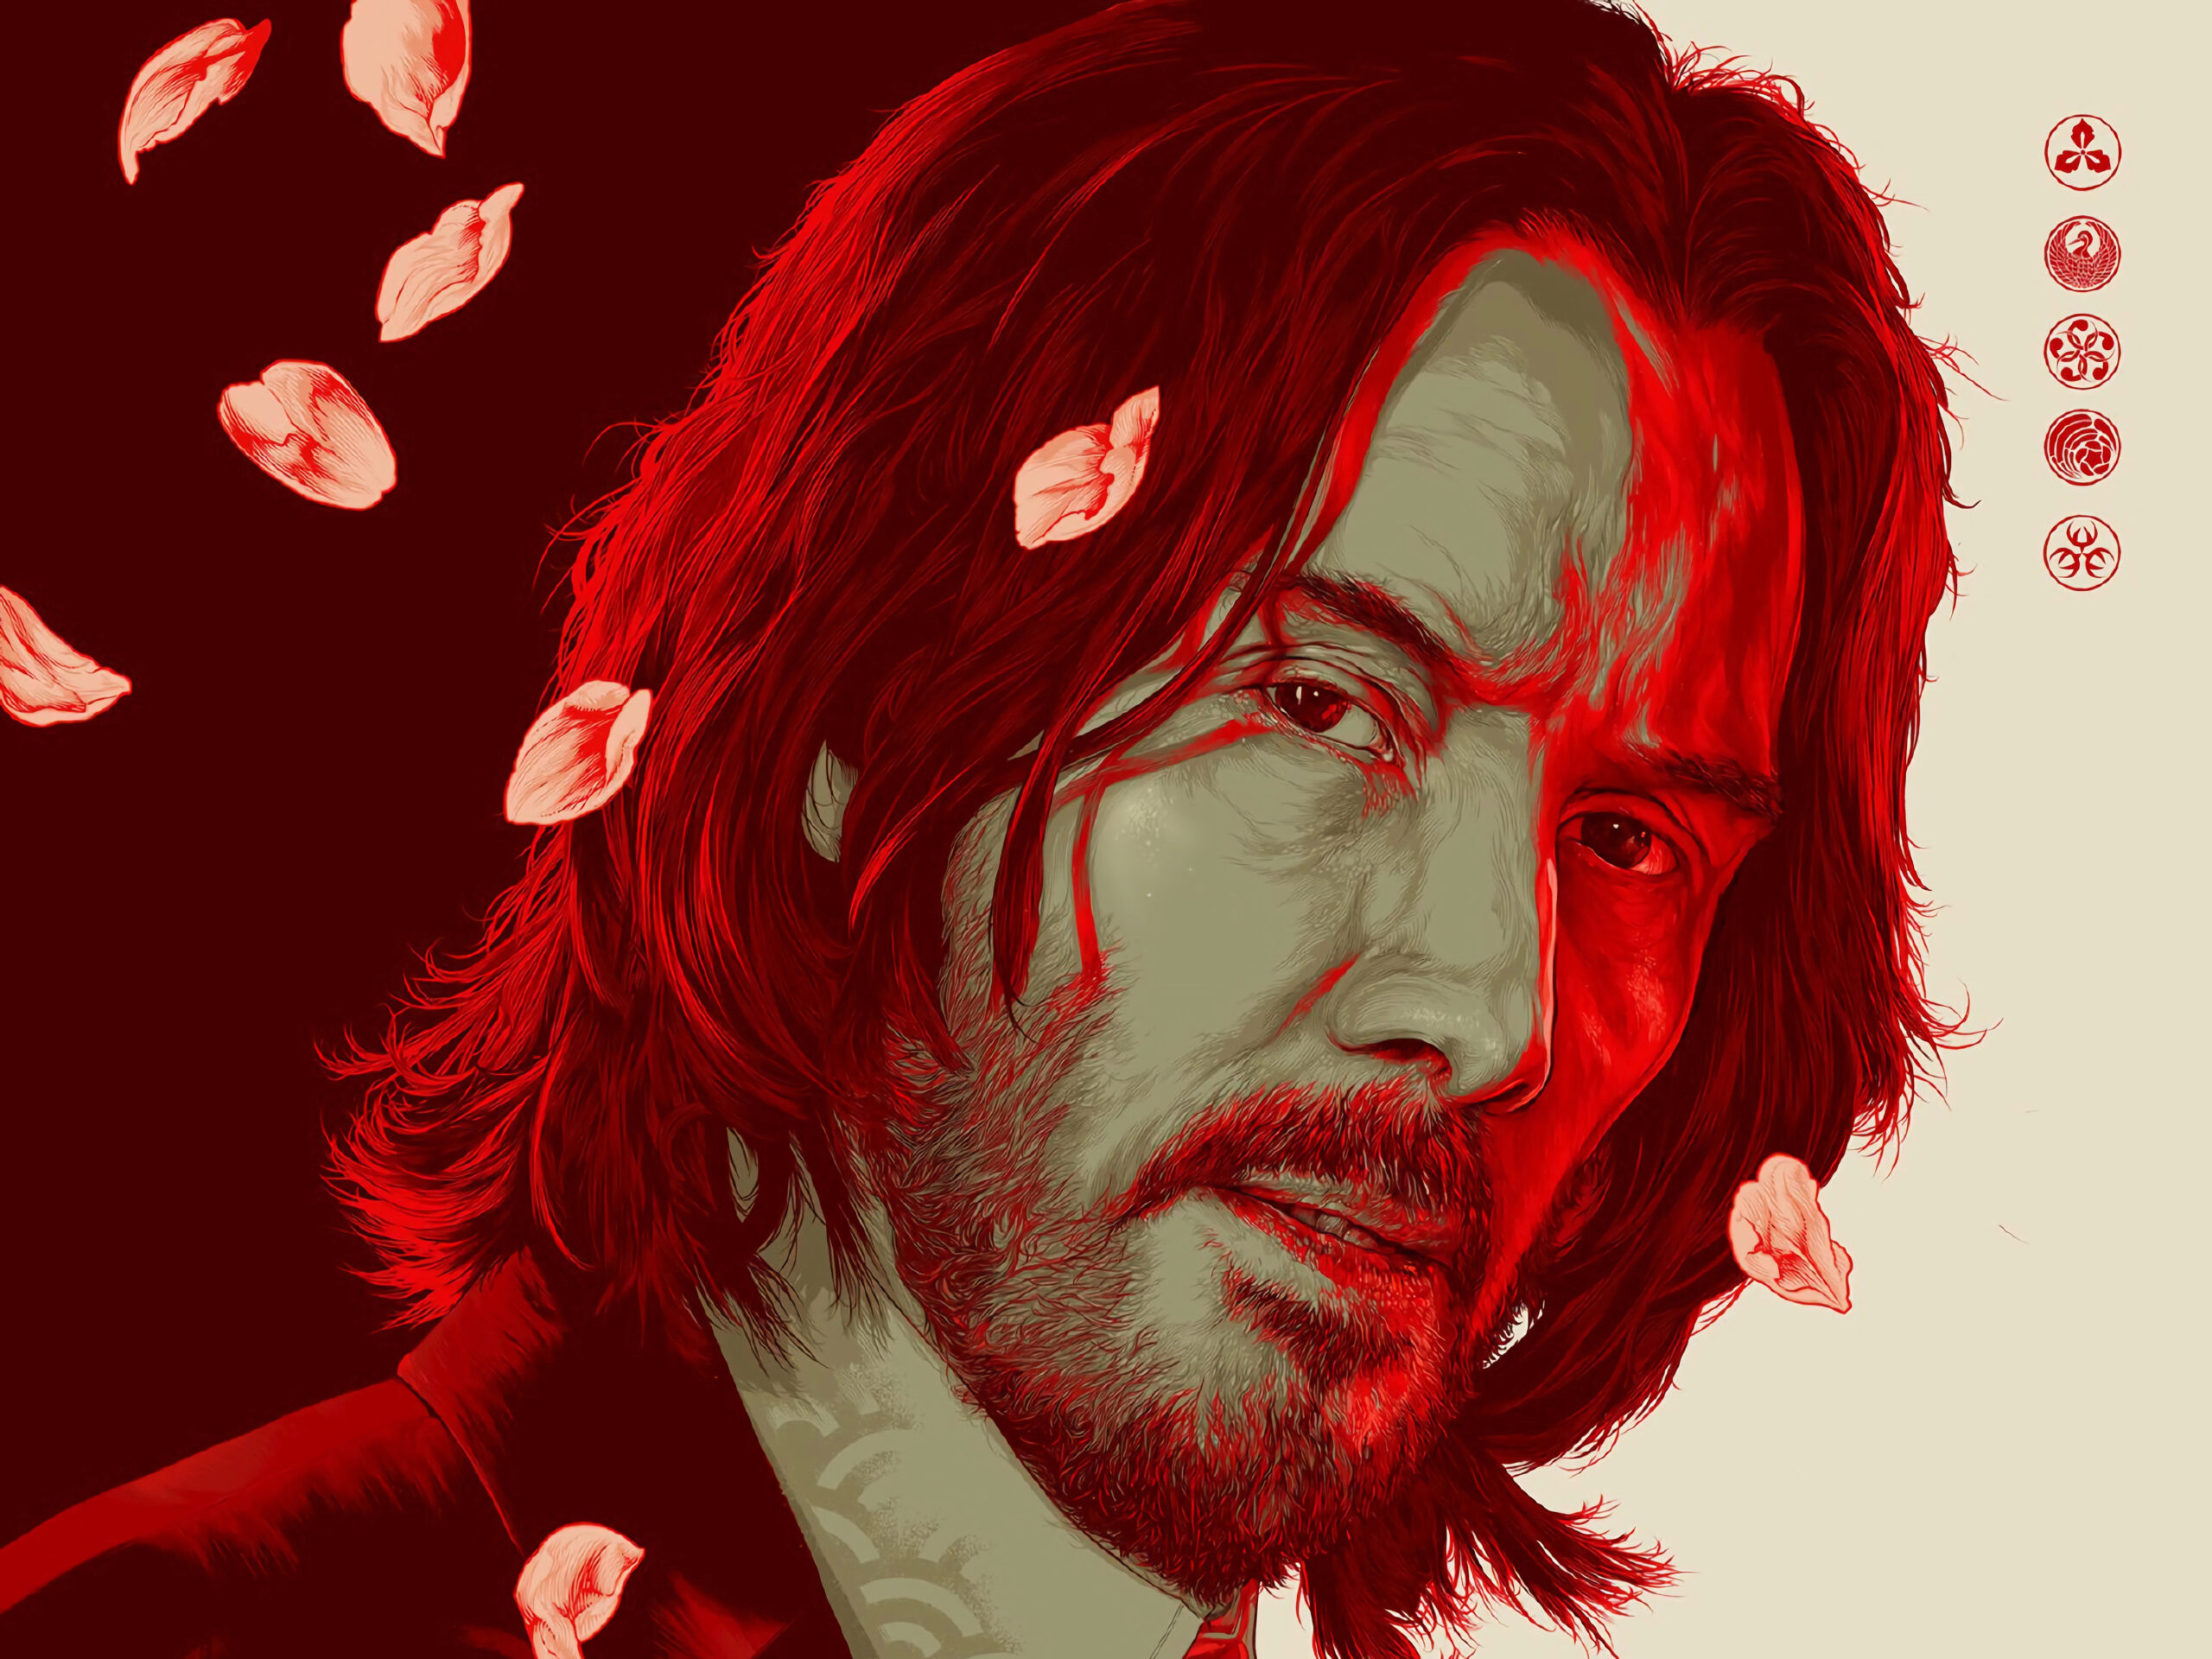 John Wick 5: Sorpresa de Keanu Reeves divide a los fans